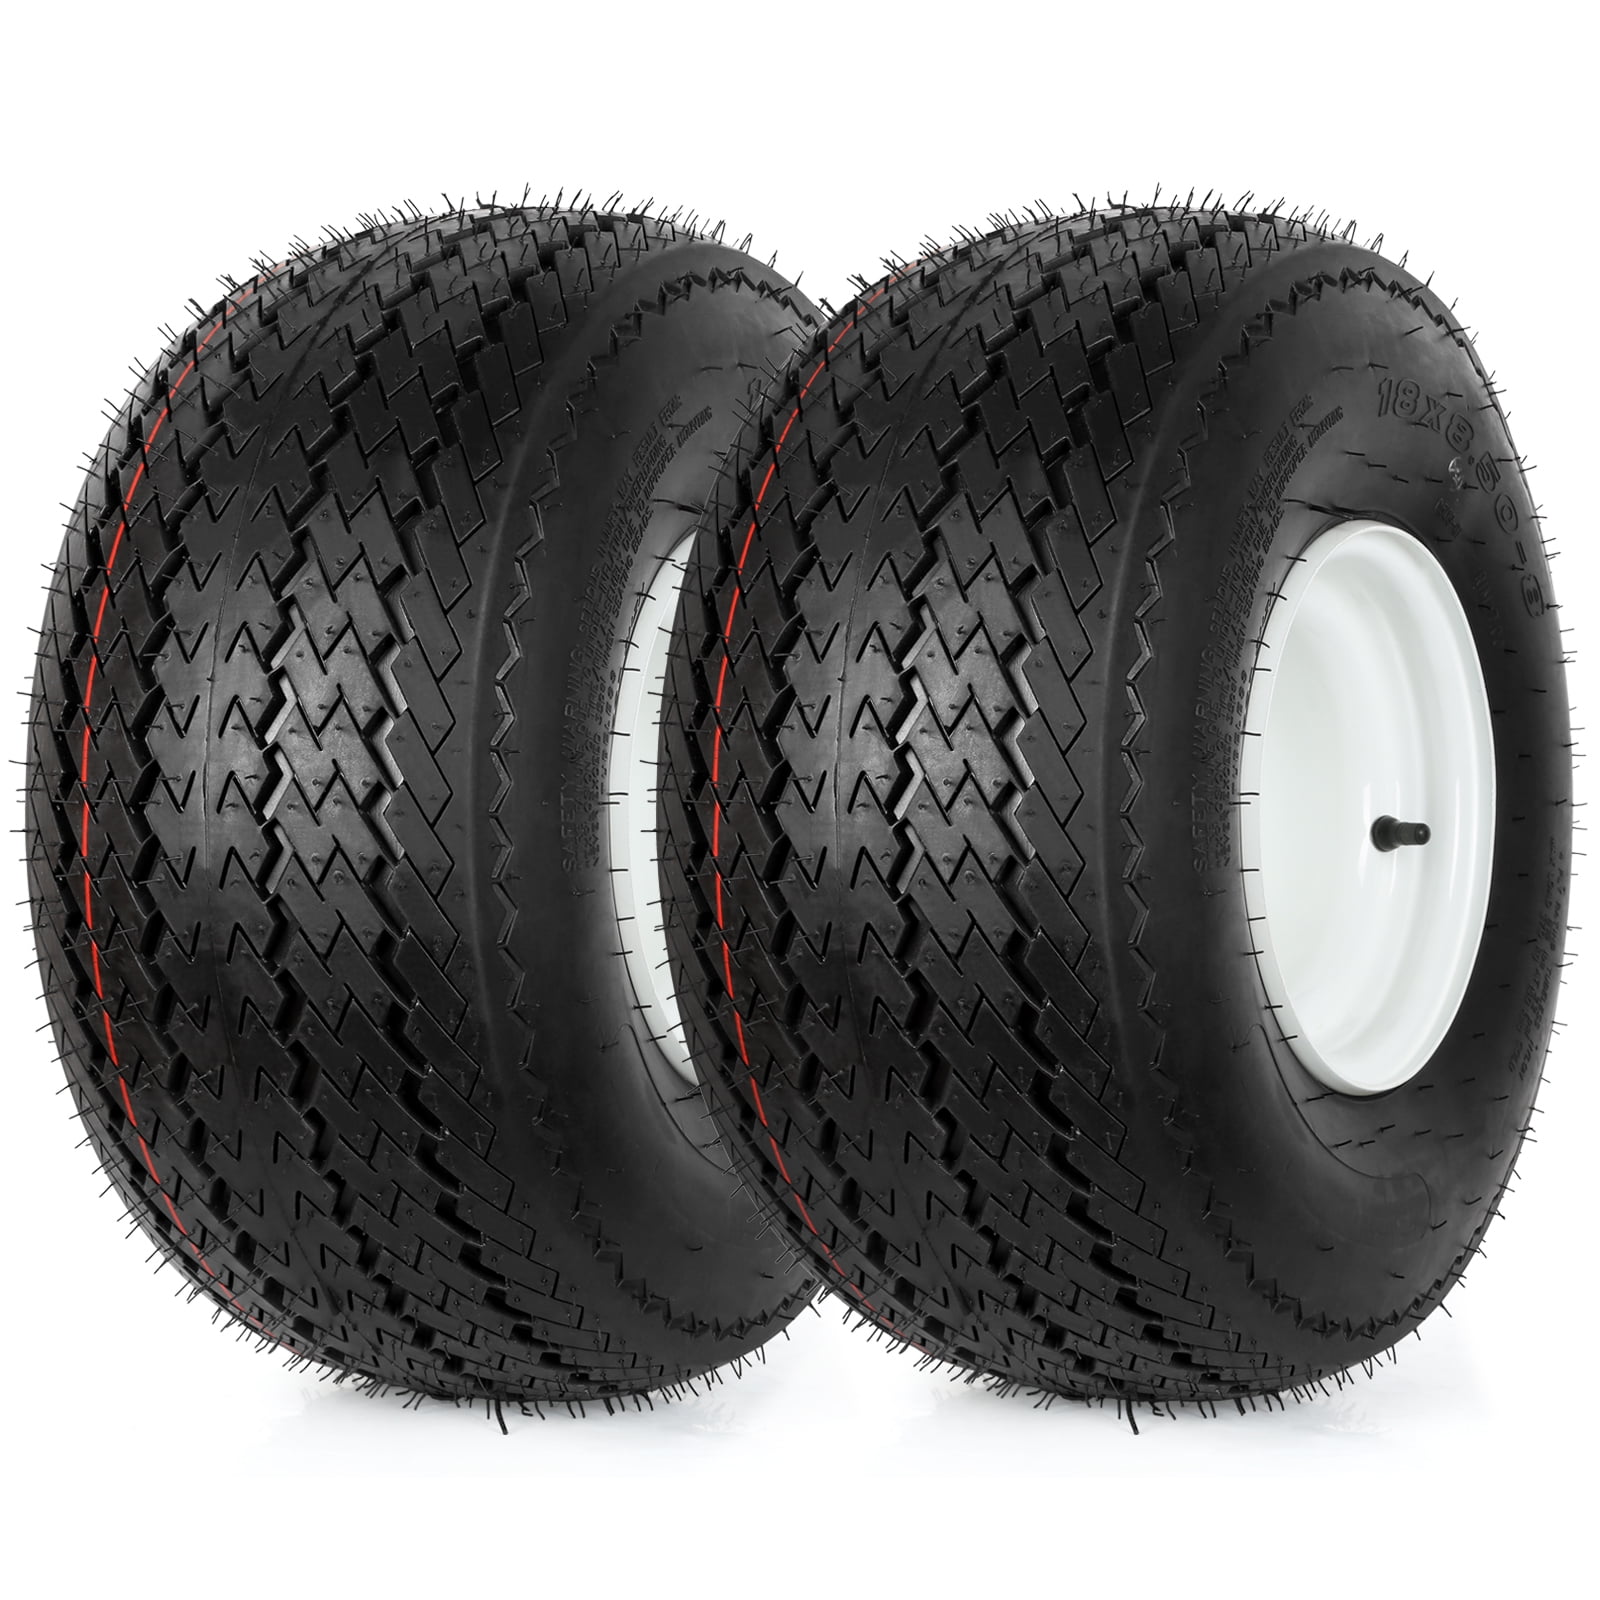 18" x 8.50-8 Turf Tire & Rim for Go Kart Lawn Mower Cart 18x8.50-8 18x8.50x8 NEW 